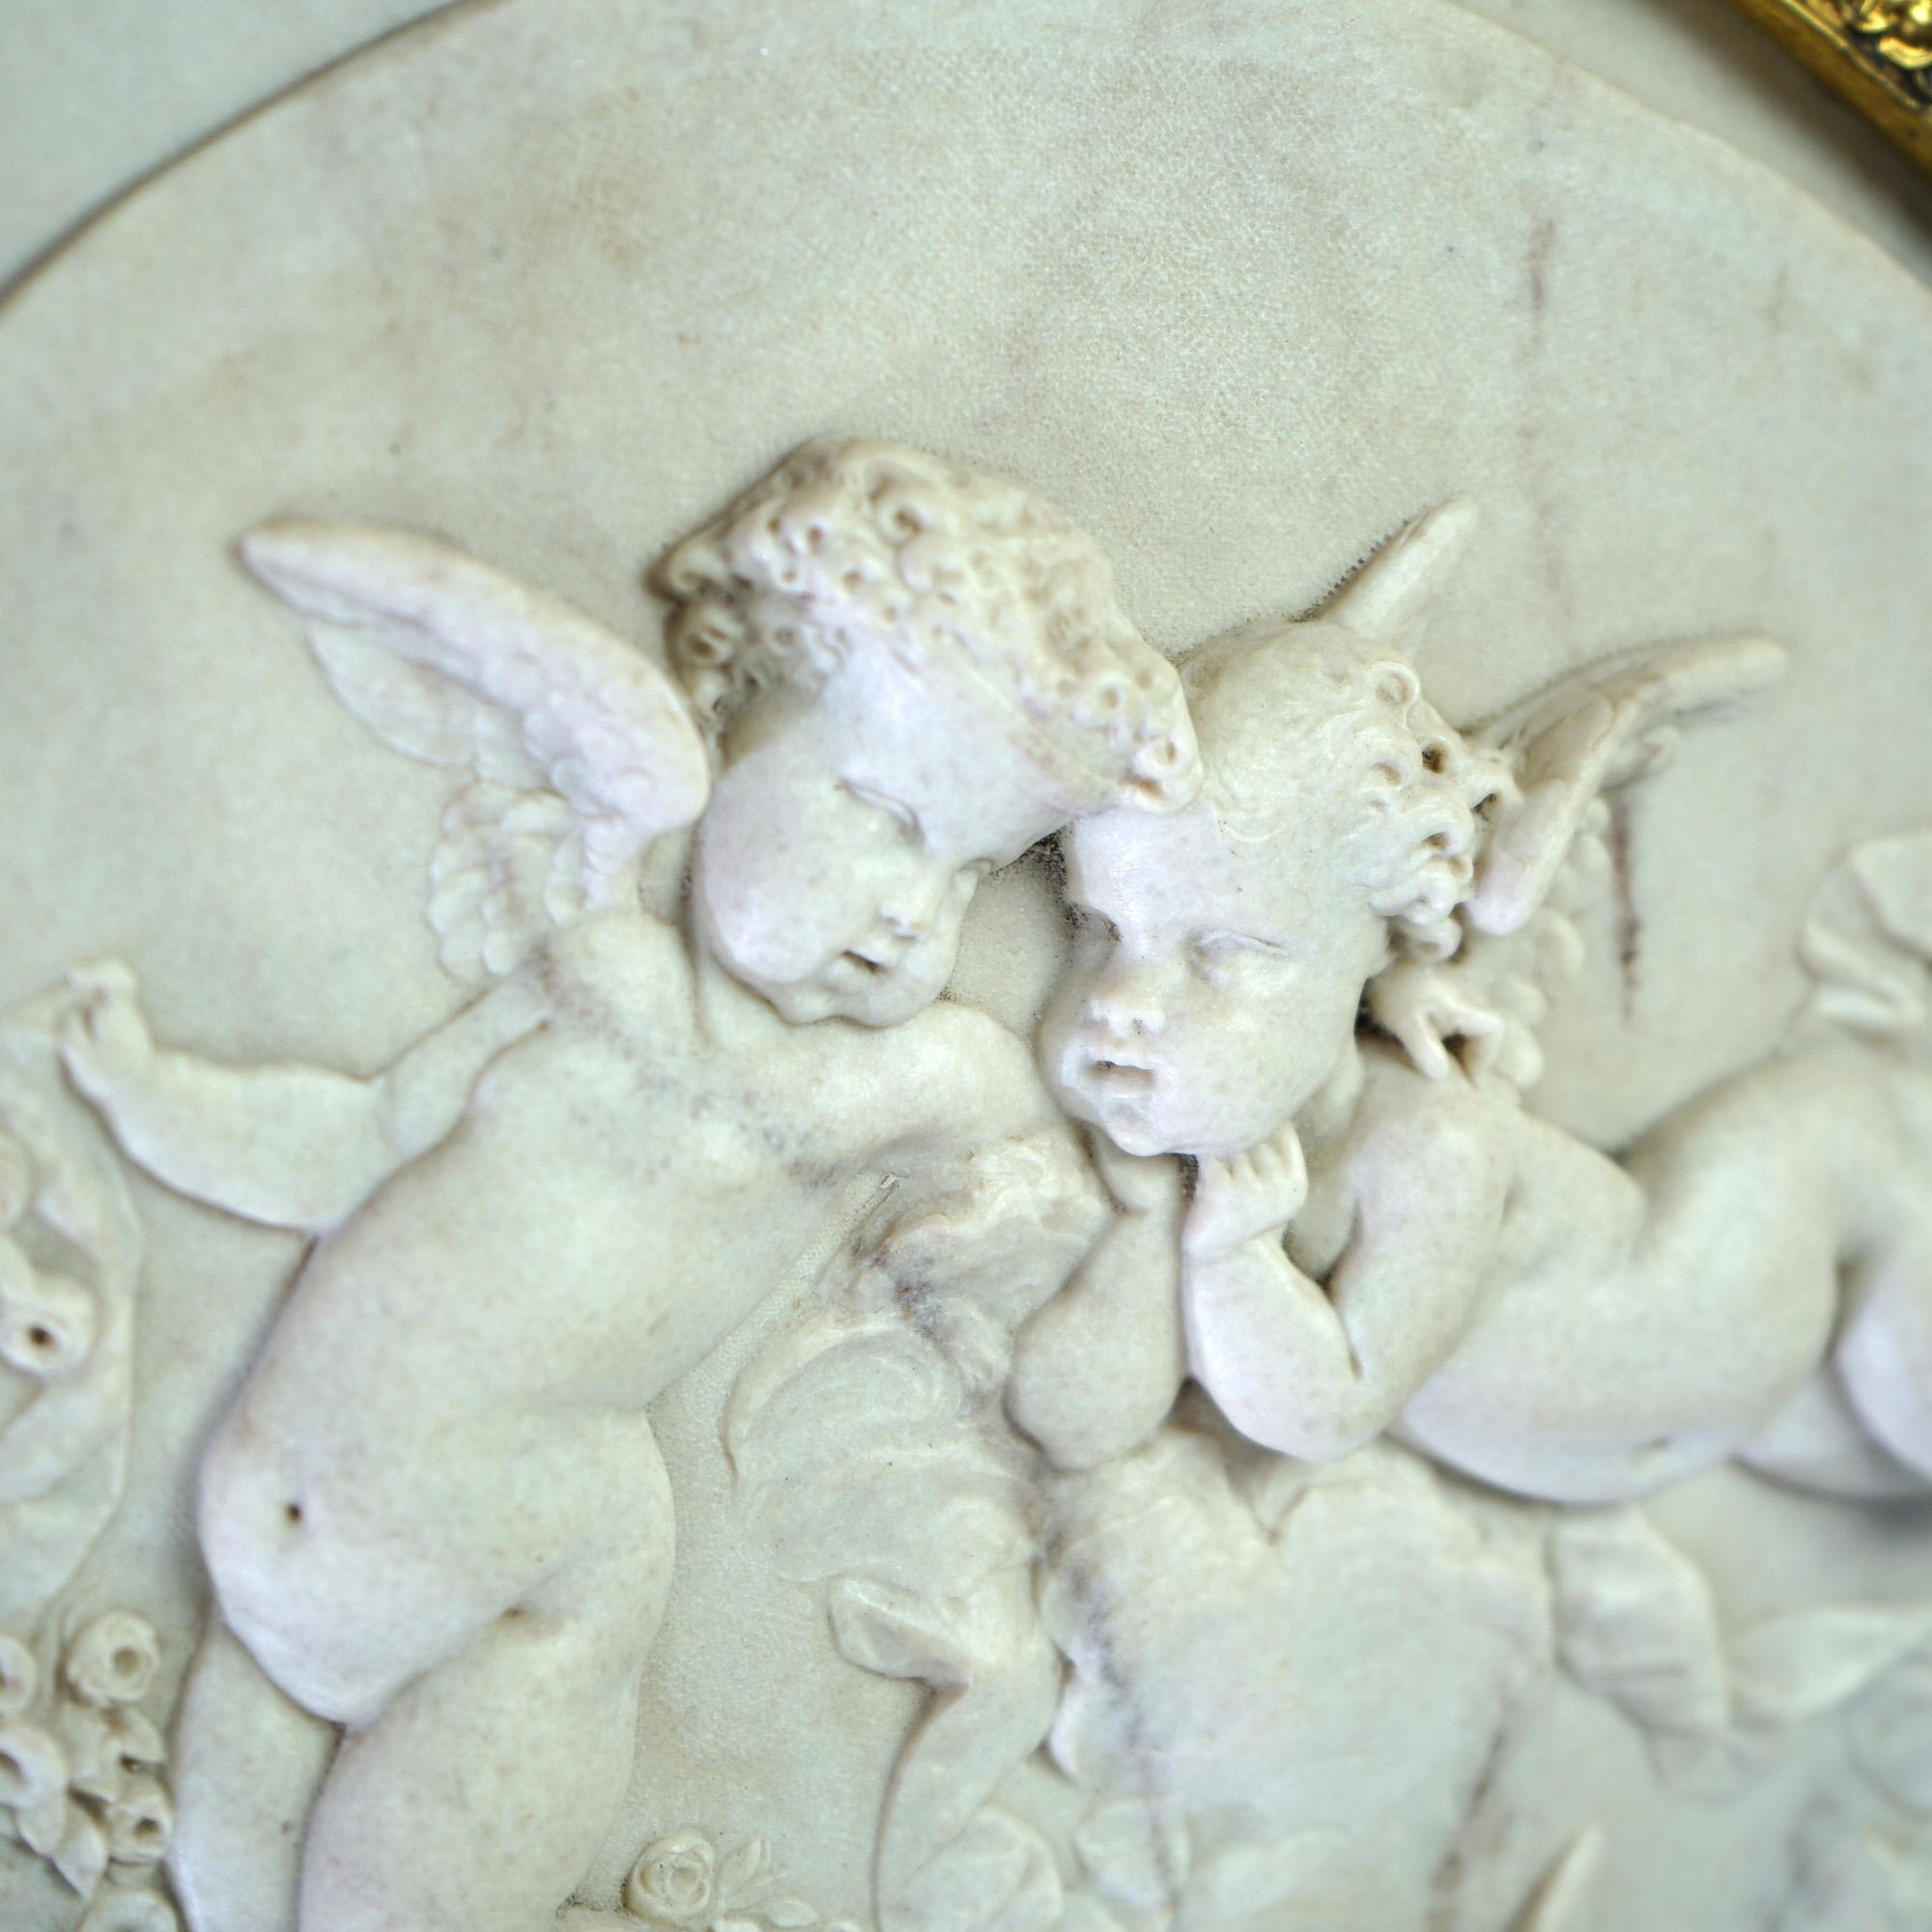 Ancienne plaque classique en marbre sculpté avec des chérubins ailés en haut relief, par Bertaux, Exposition Universelle 1889, placée dans un cadre plus récent en bois doré, 19ème C.

Mesures - 22,75 